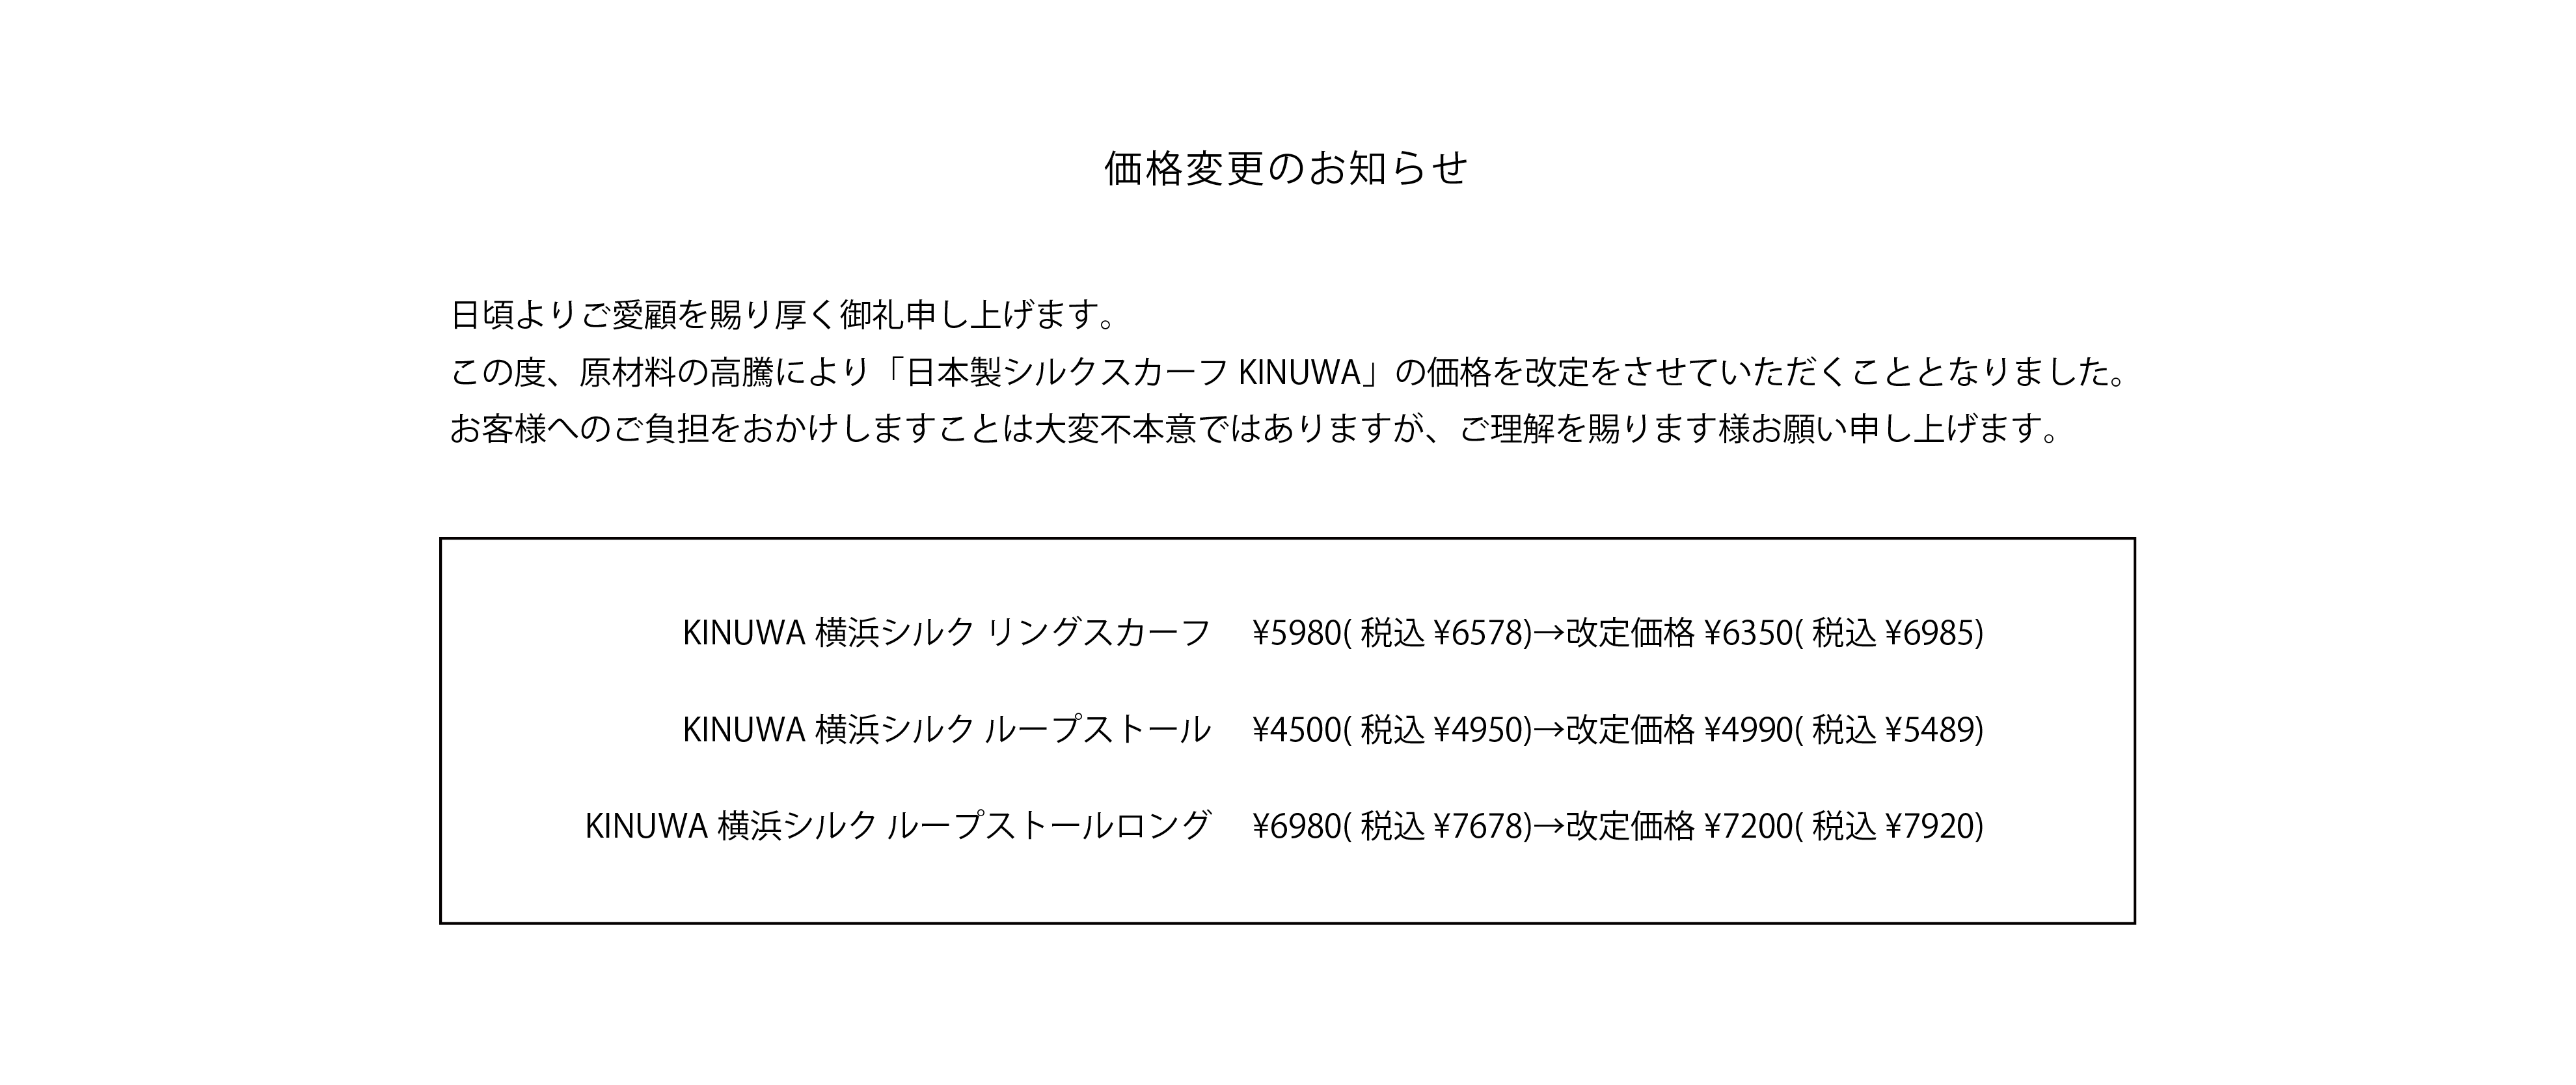 KINUWA価格改定のお知らせ